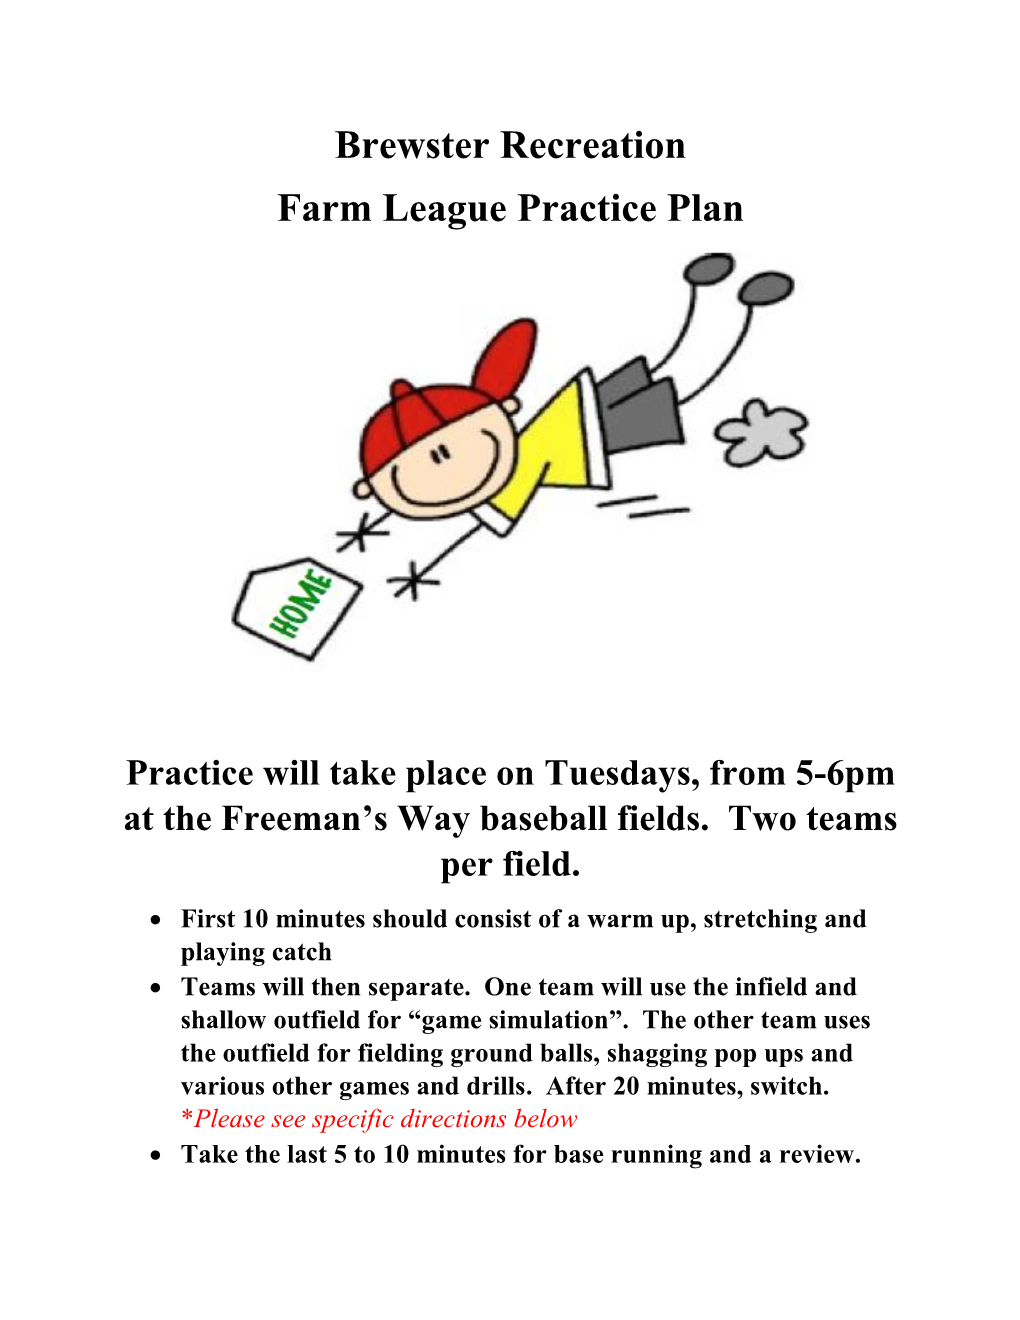 Farm League Practice Plan